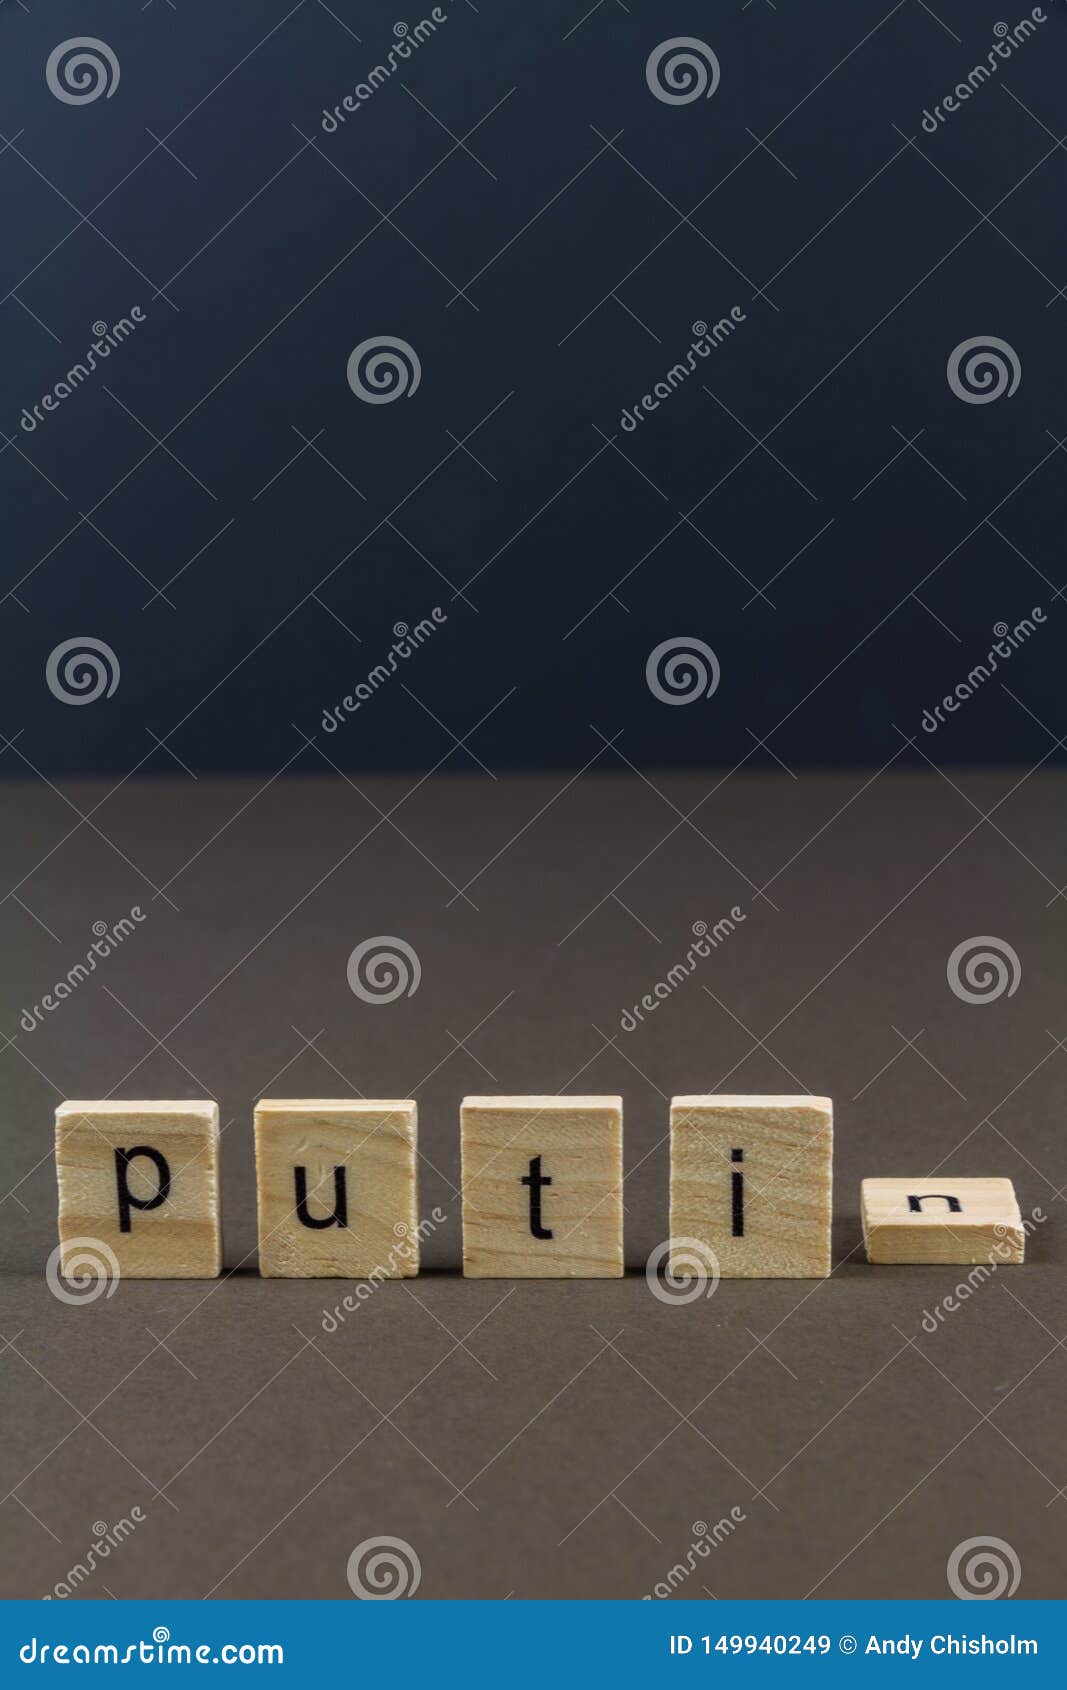 wood letter blocks spelling putin, n fallen, portrait